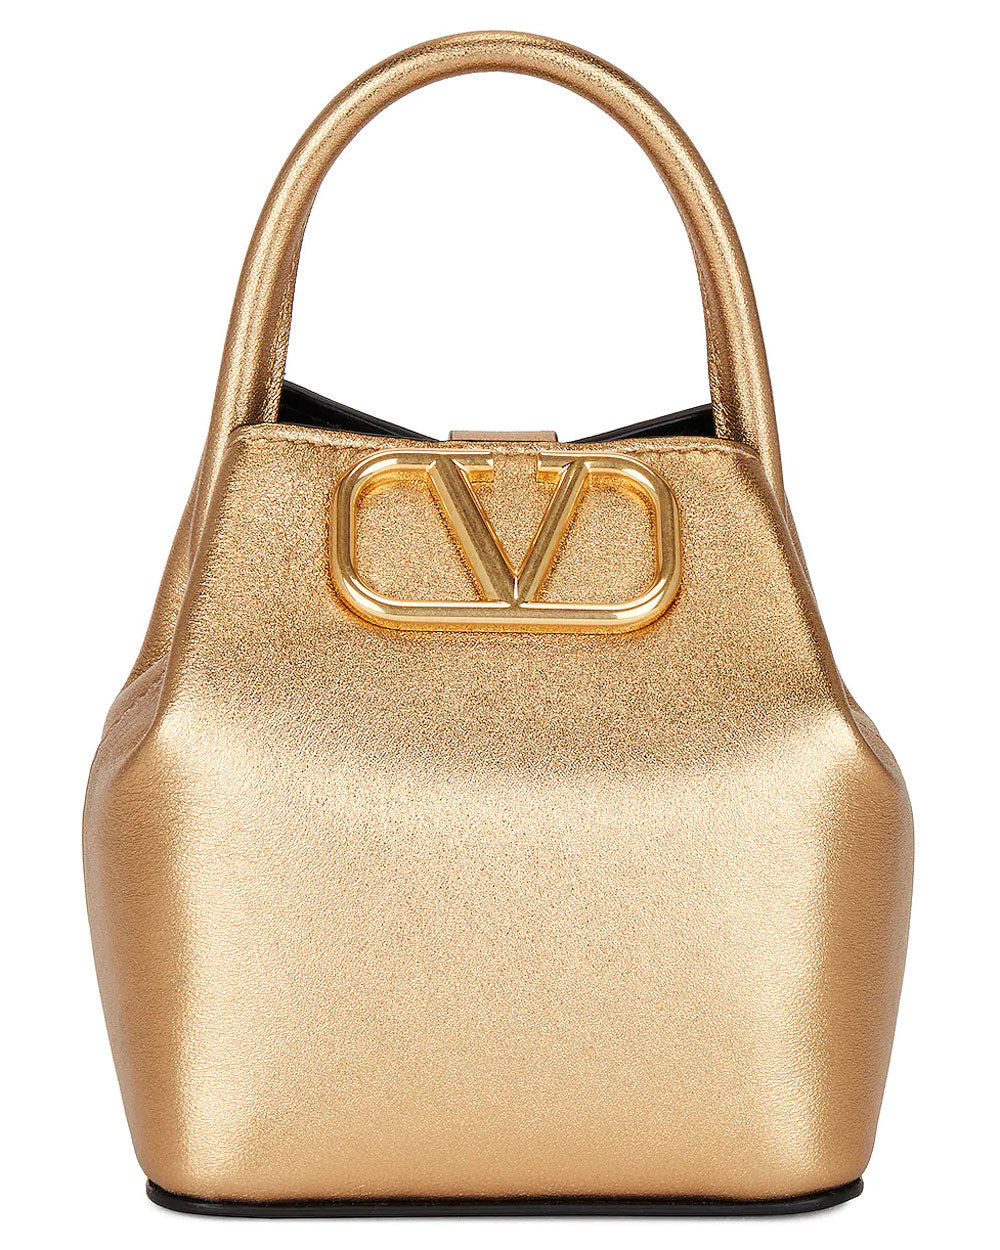 VLOGO Signature Mini Bucket Bag in Antique Brass